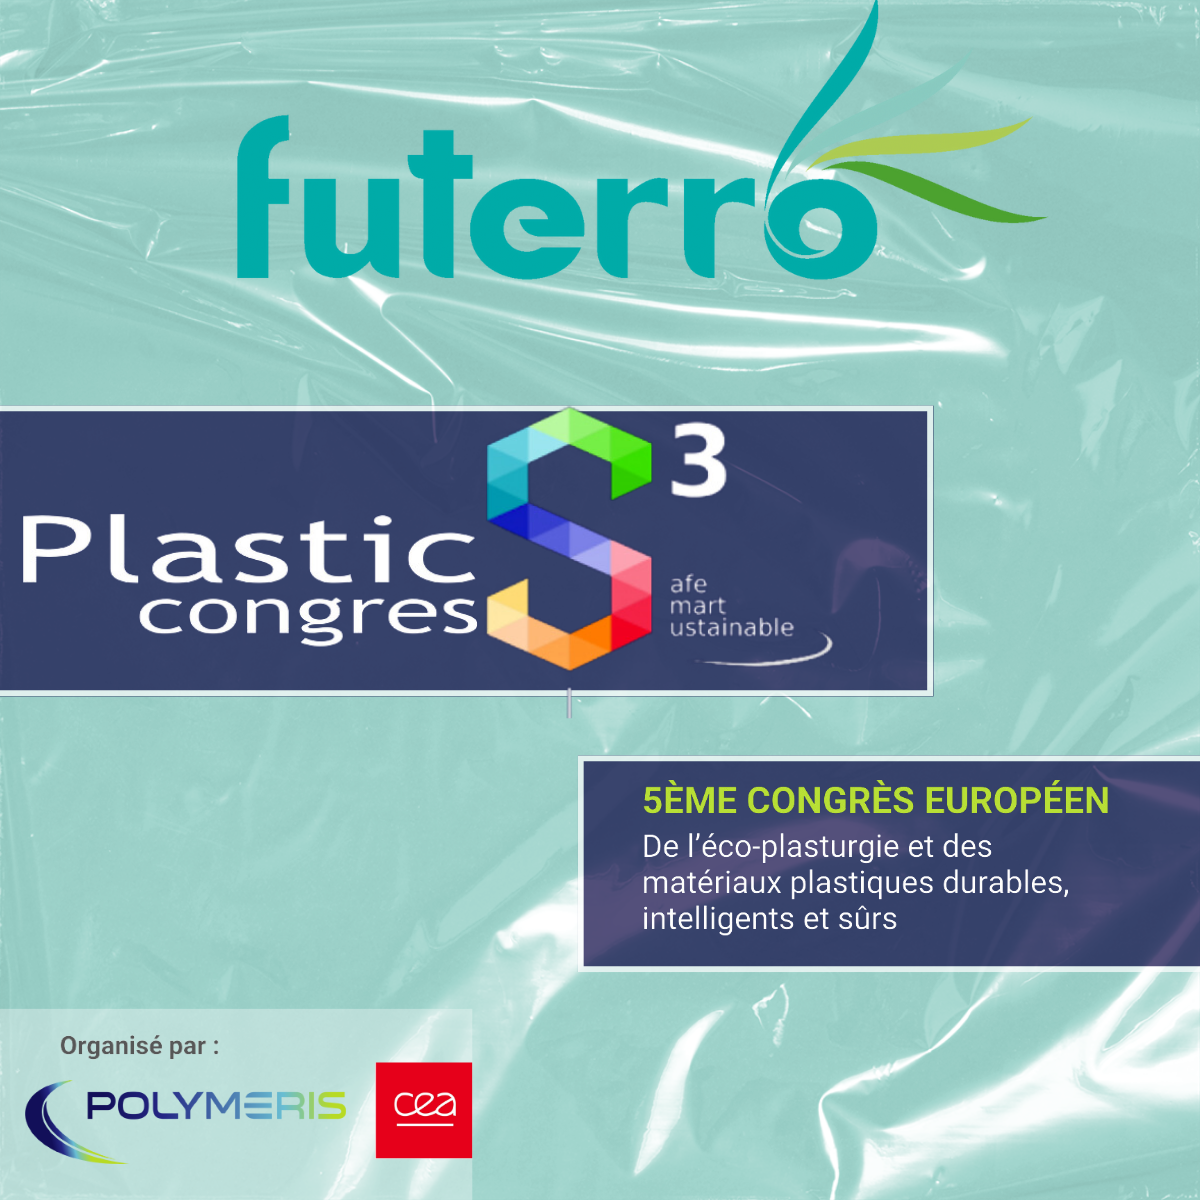 PLA - Polymeris - Futerro - Plastic Congres S3